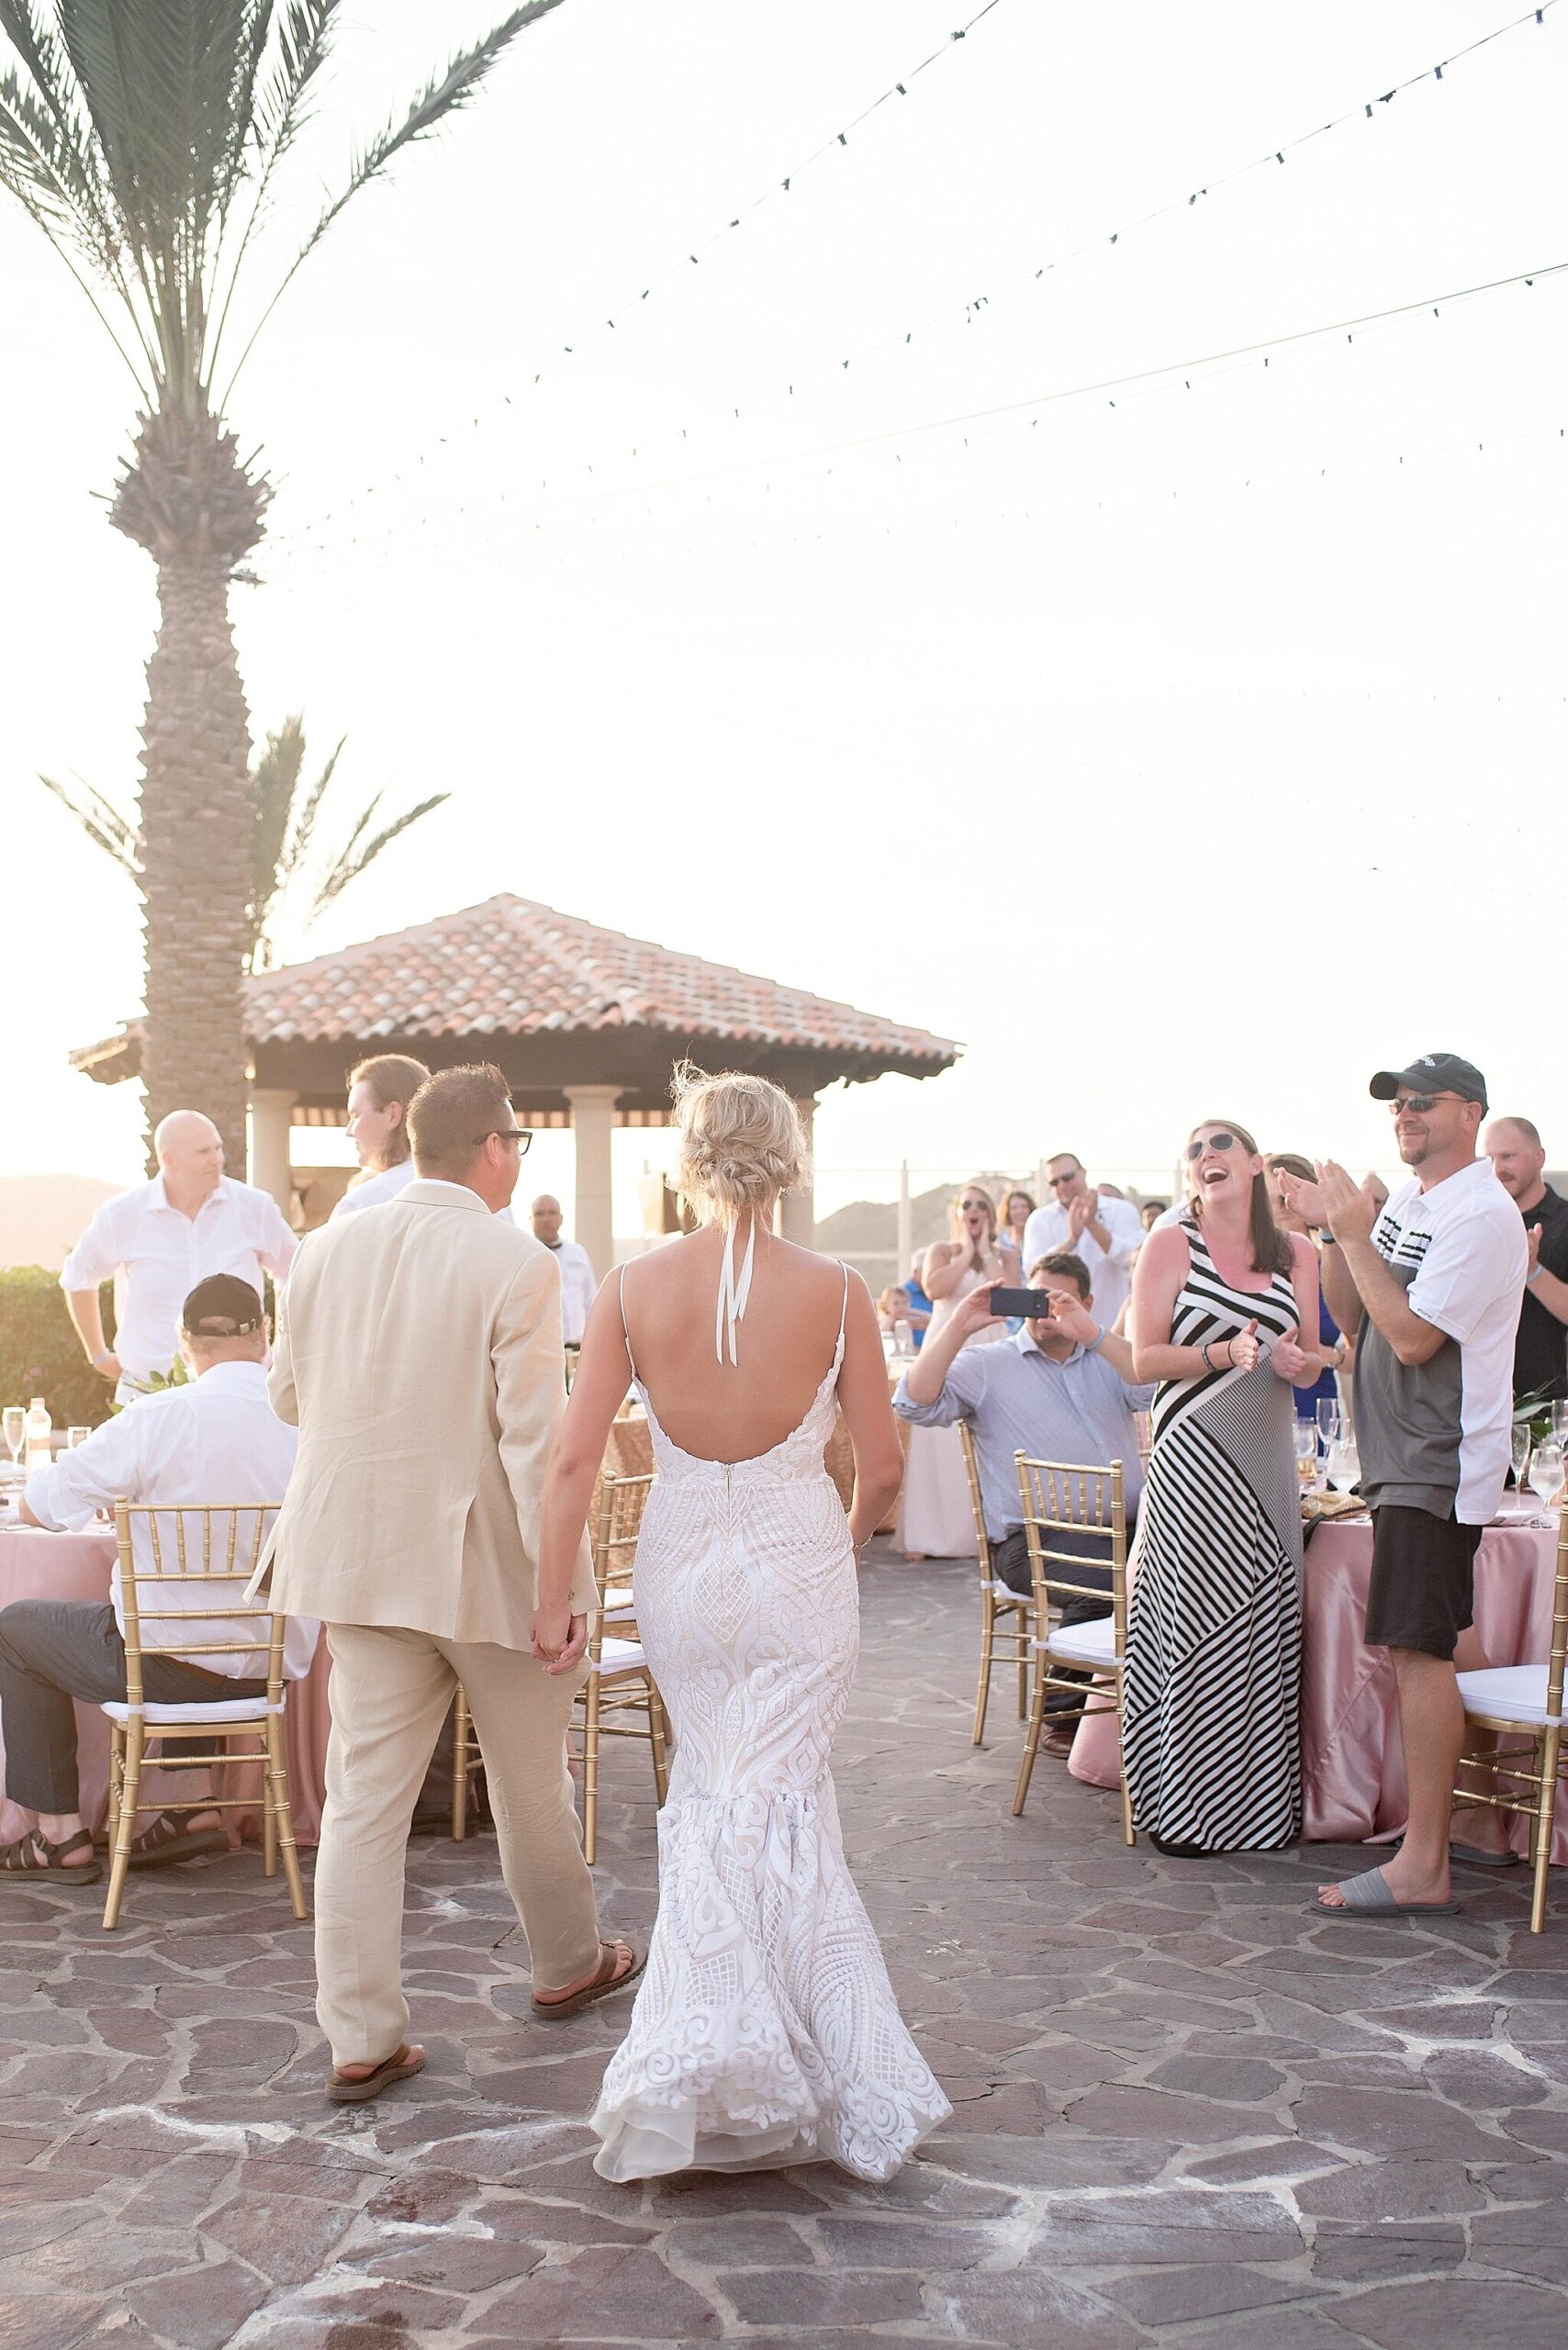 bride and groom enter rooftop poolside wedding reception destination pueblo bonito sunset beach mexico